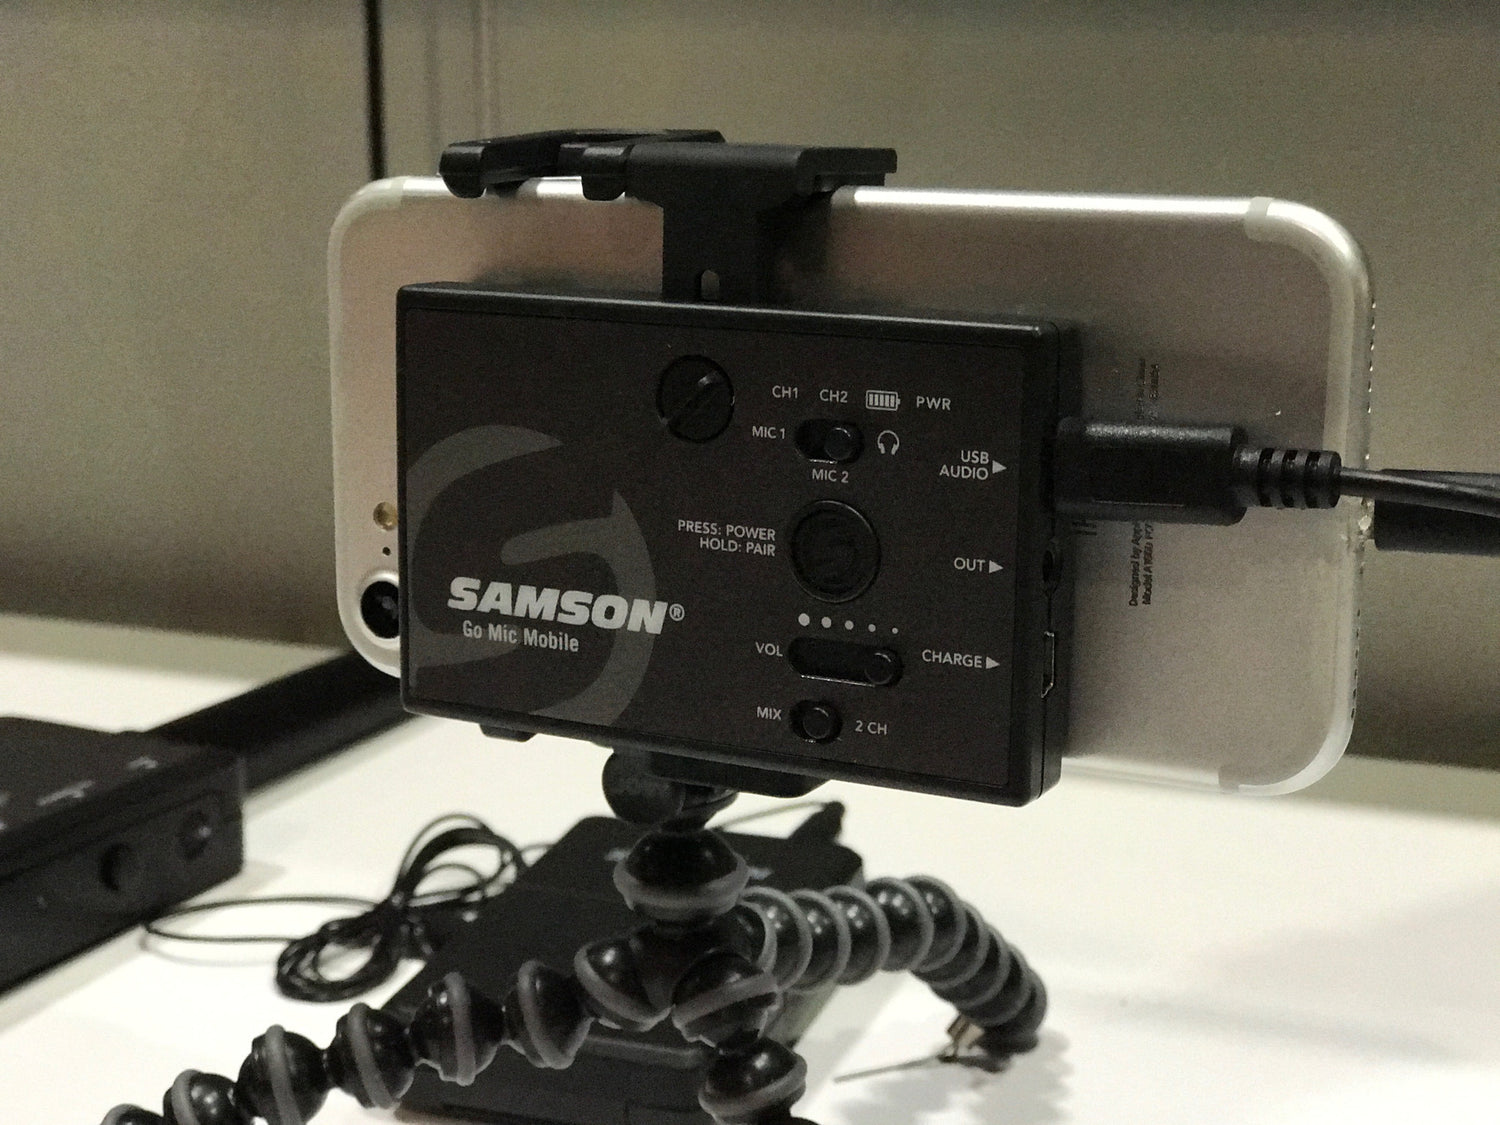 Samsontech introduces a 2 channel wireless mixer!